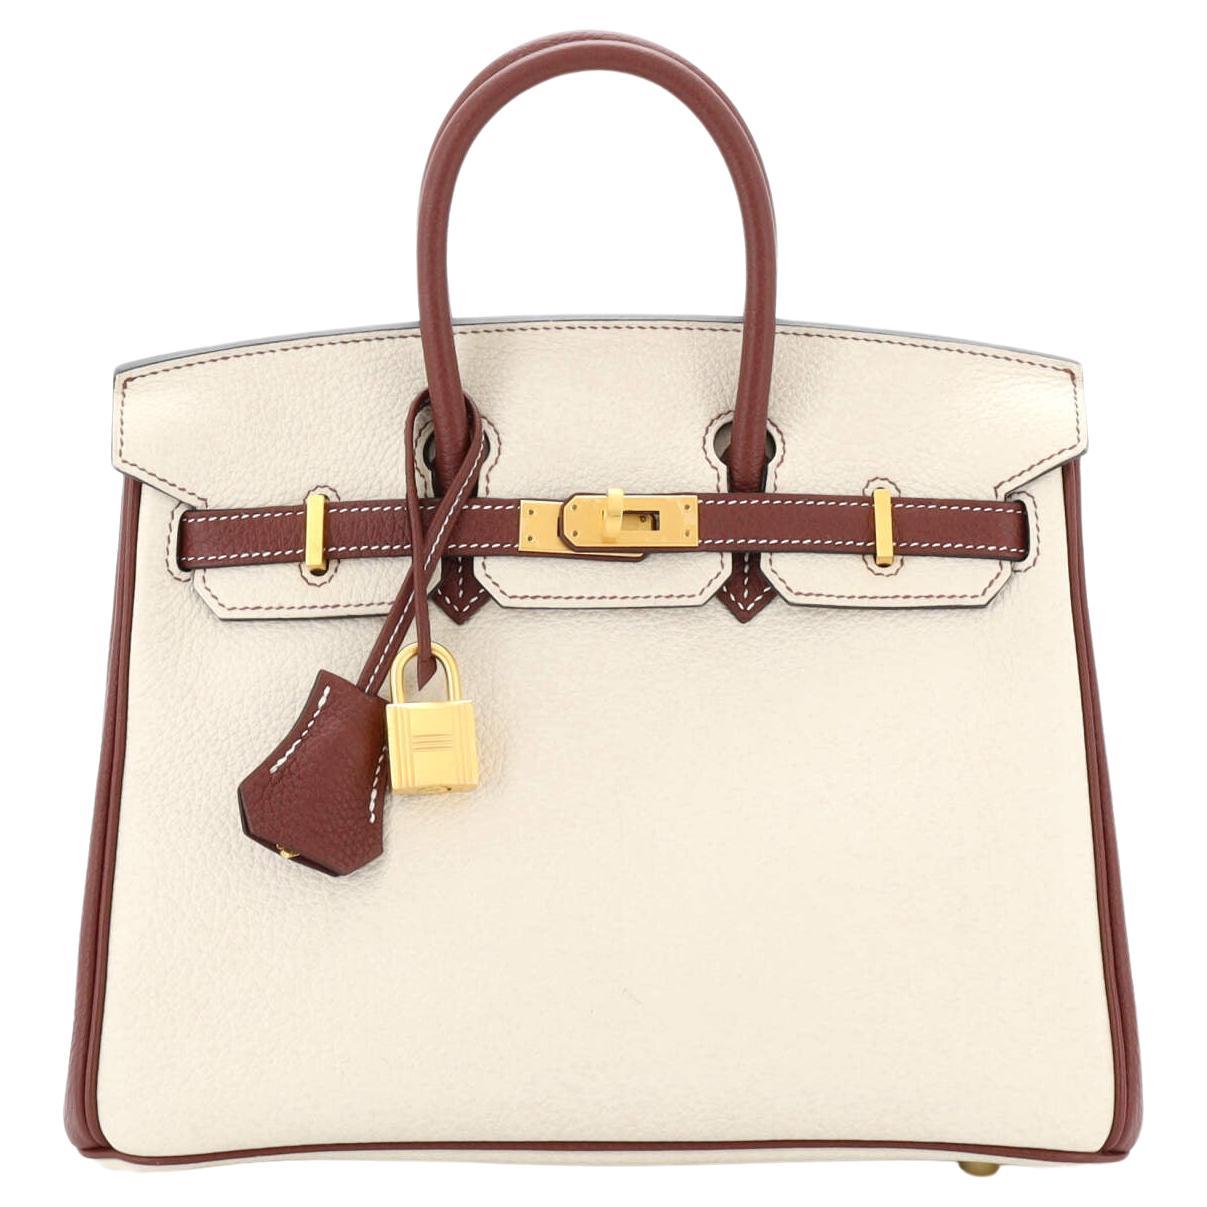 Hermes Birkin Handbag Bicolor Clemence with Brushed Gold Hardware 25 For Sale